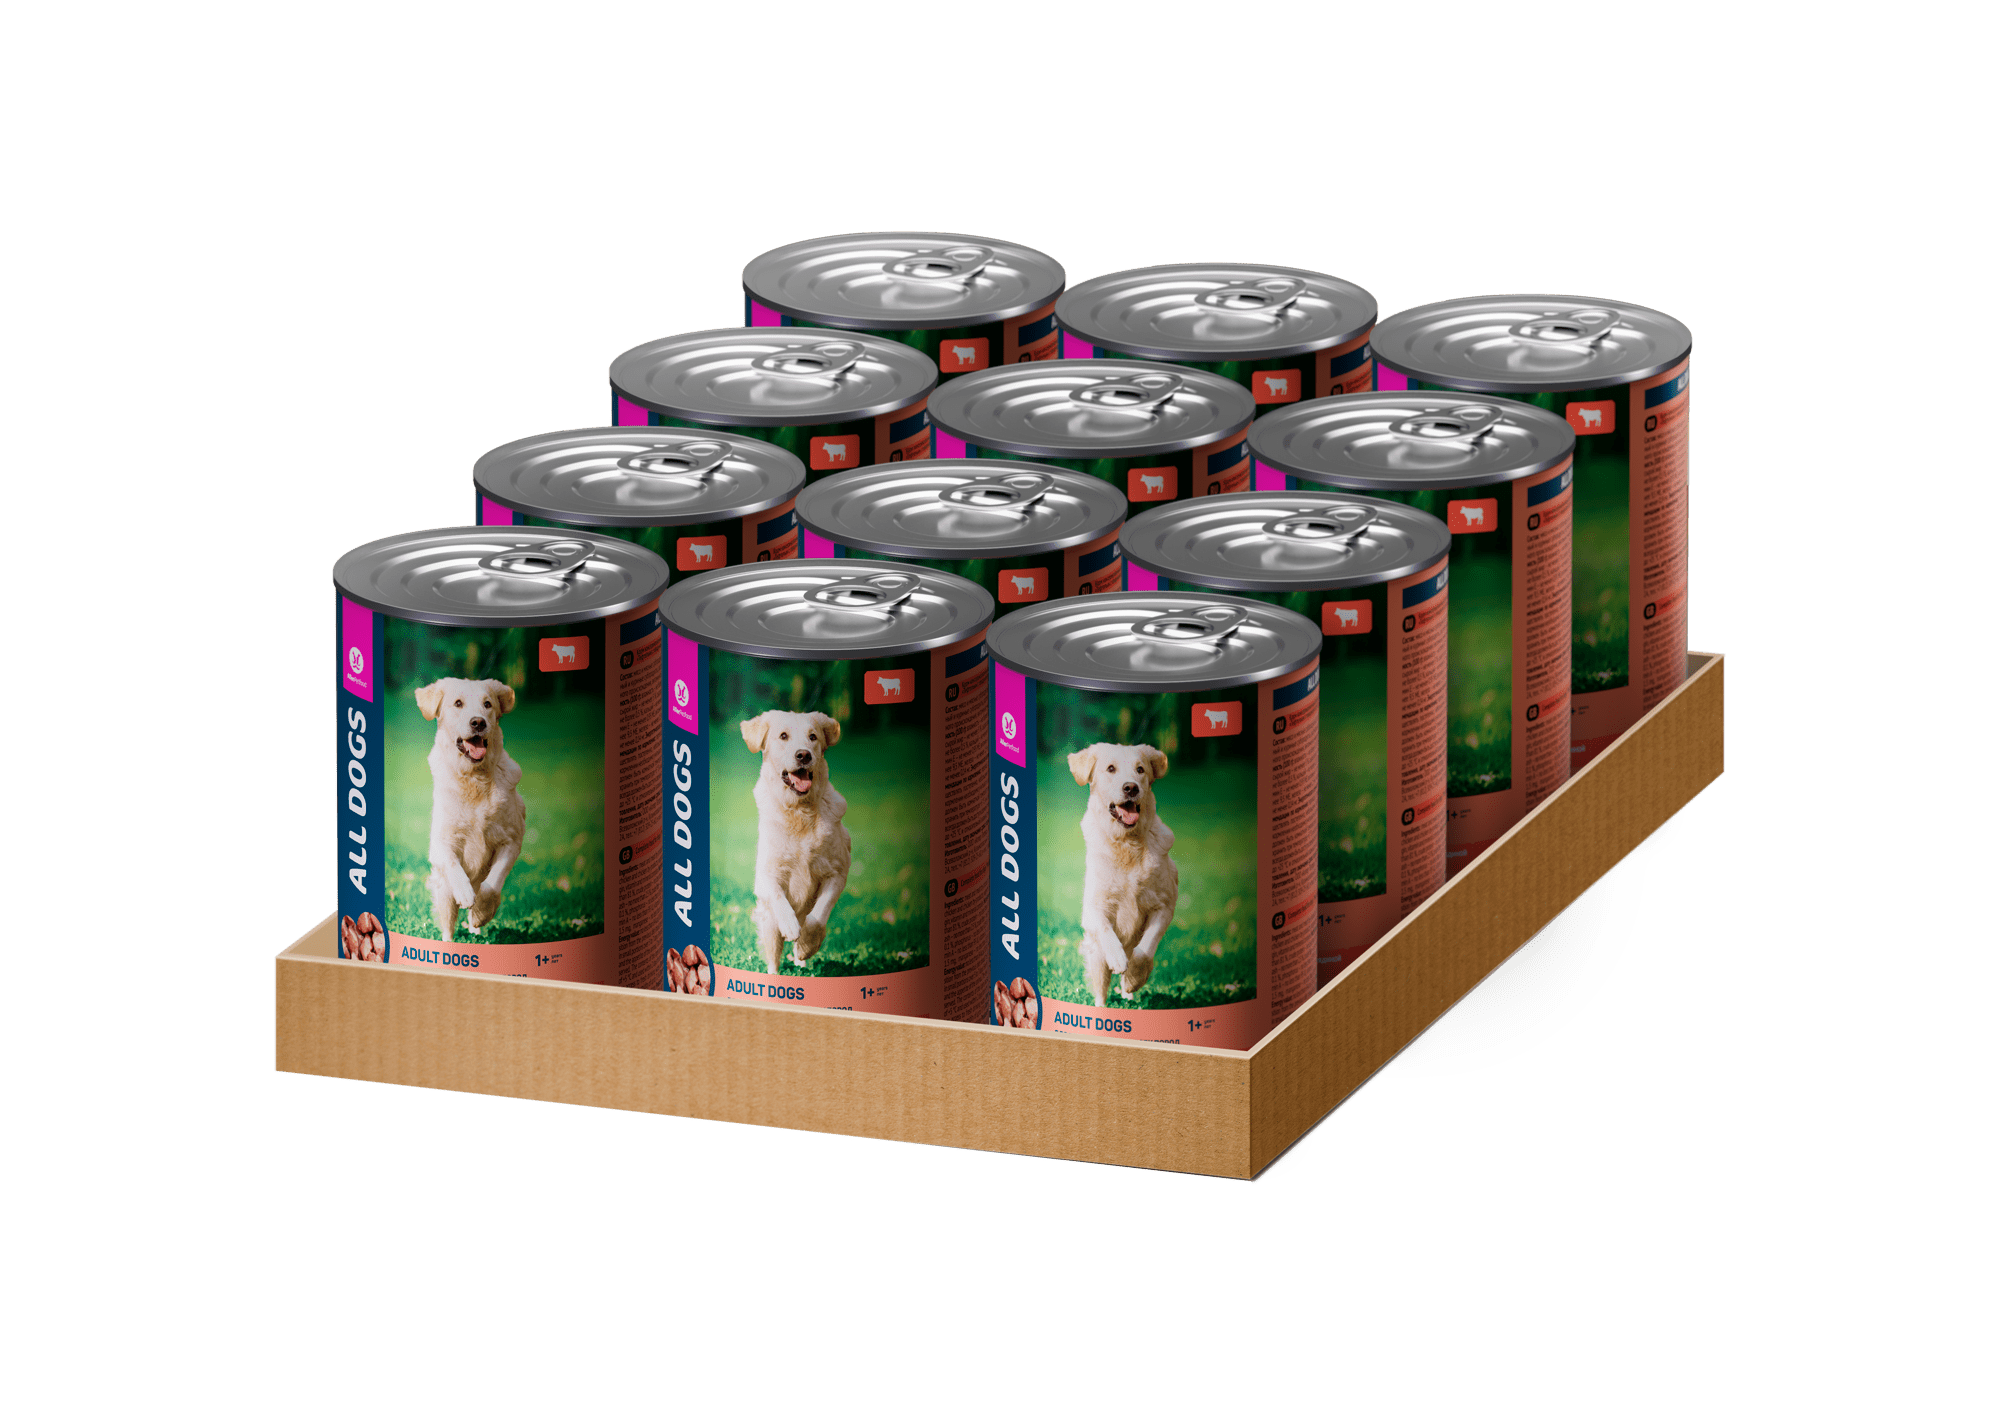 ALL DOGS корм конс. тефтельки с говядиной в соусе для собак, банка, 415 г